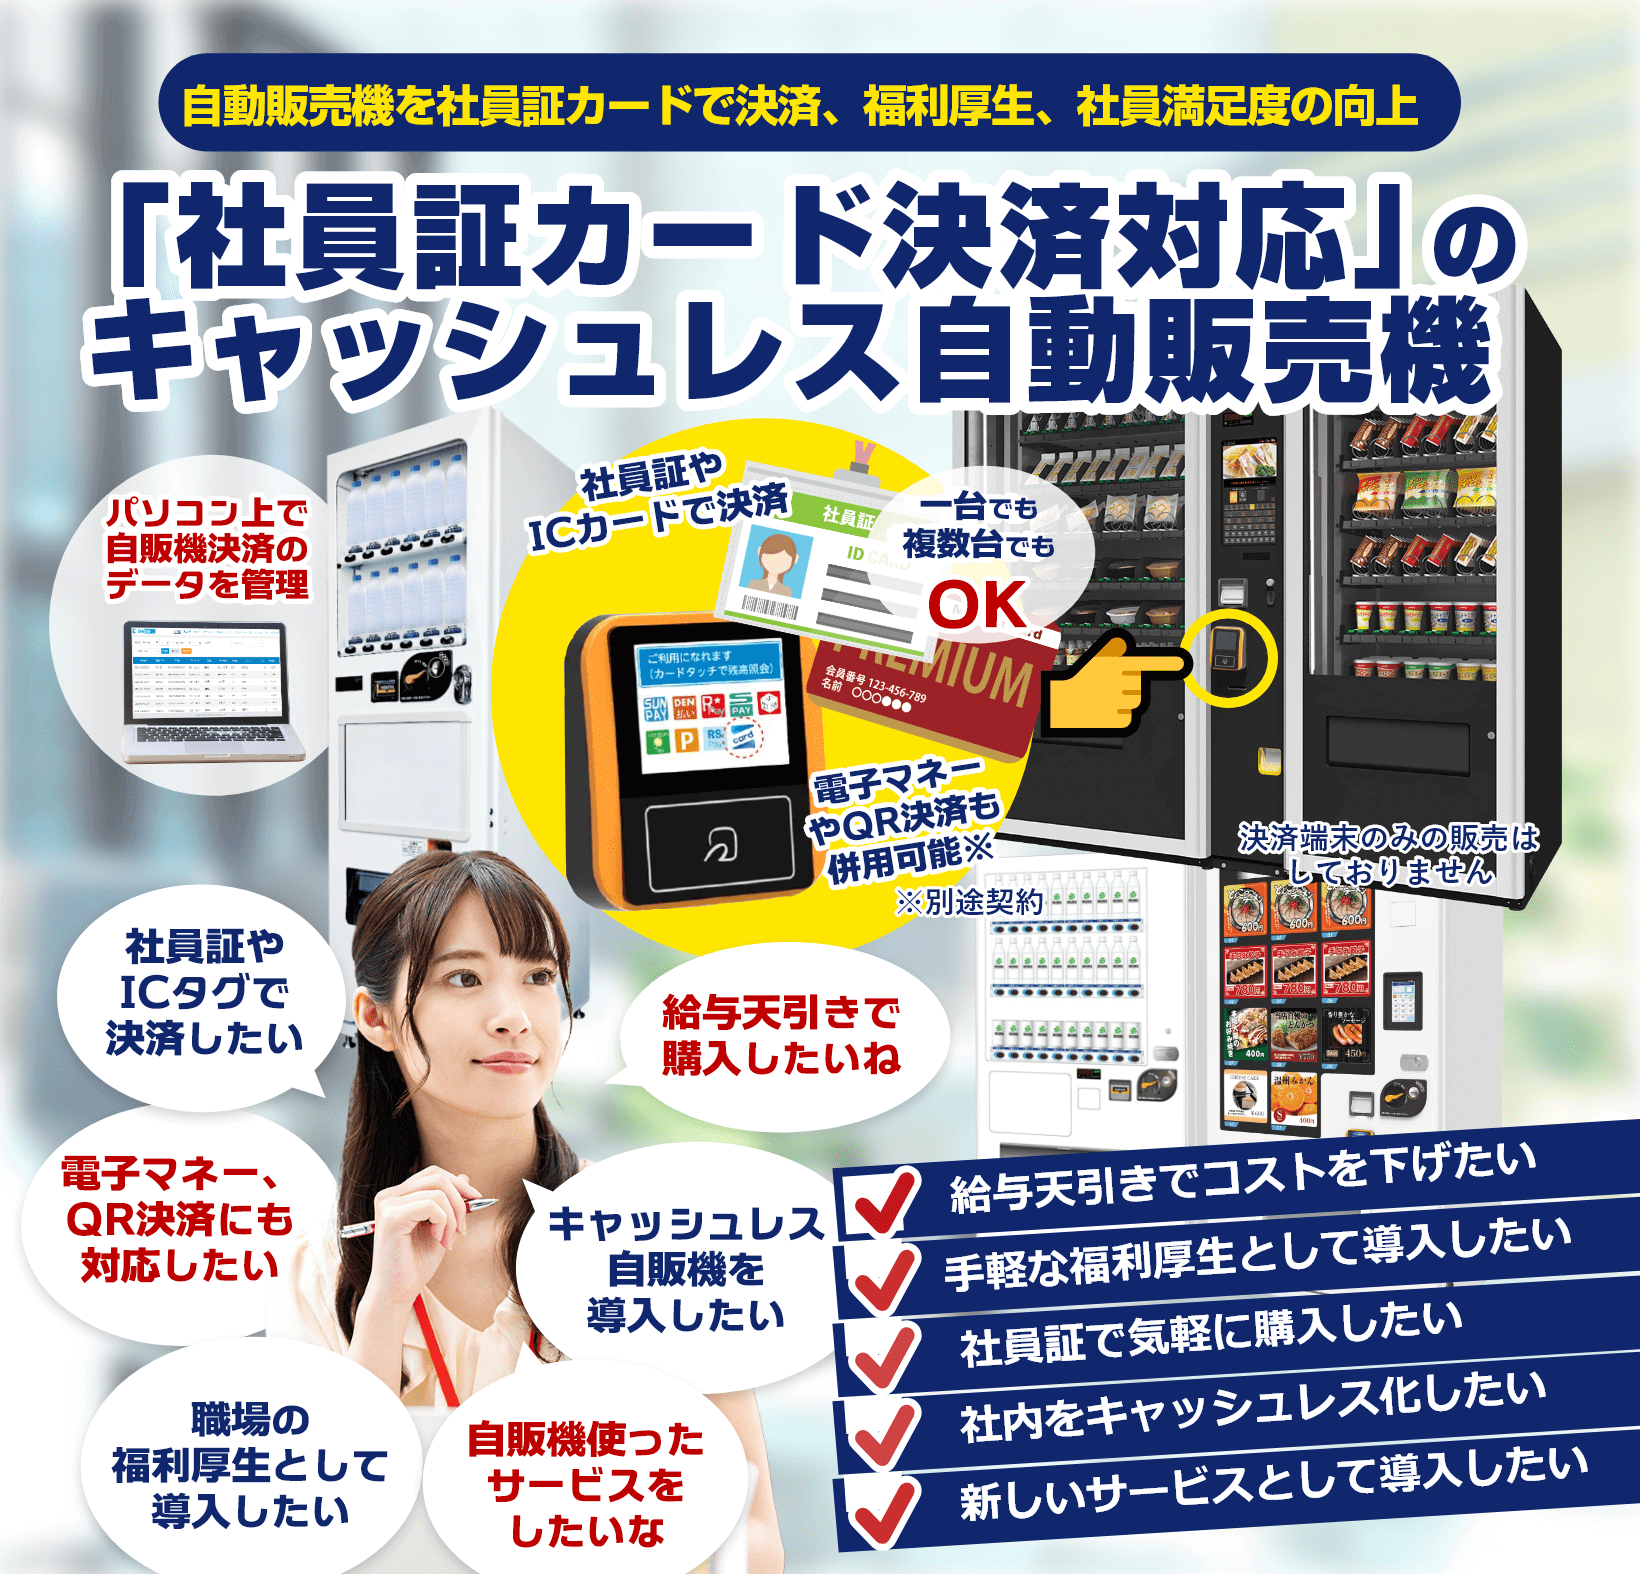 社員証カード決済対応のキャッシュレス自動販売機